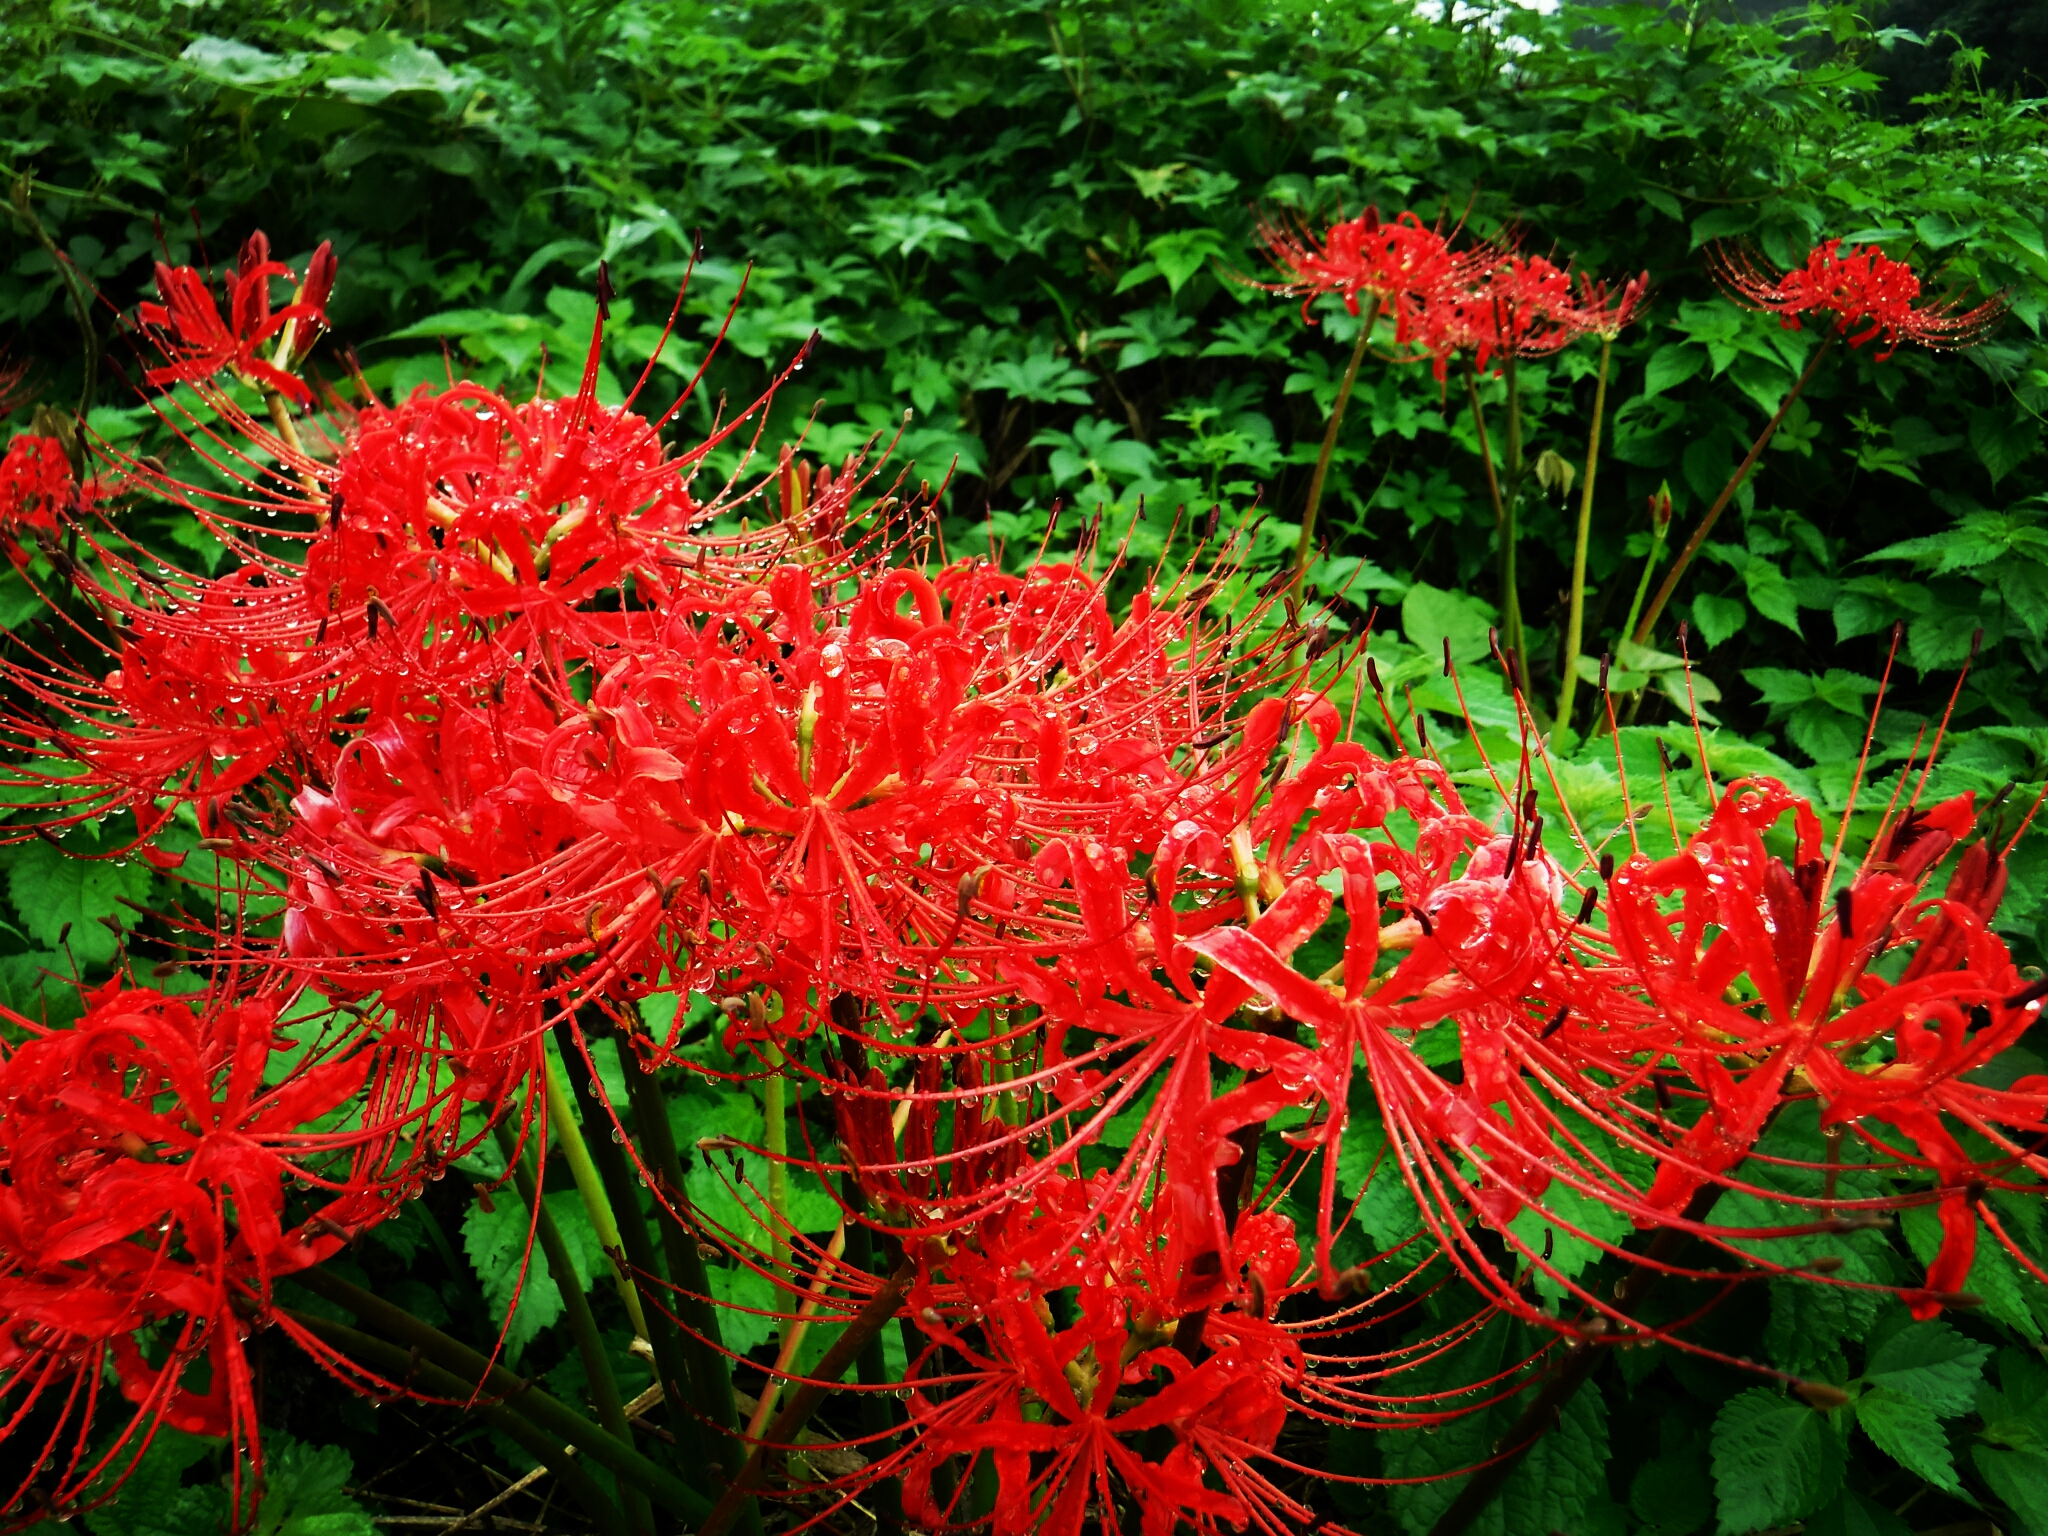 畑の畦に咲くヒガンバナ。綺麗な赤色と花のデザインに、感動して見とれてしまいます。